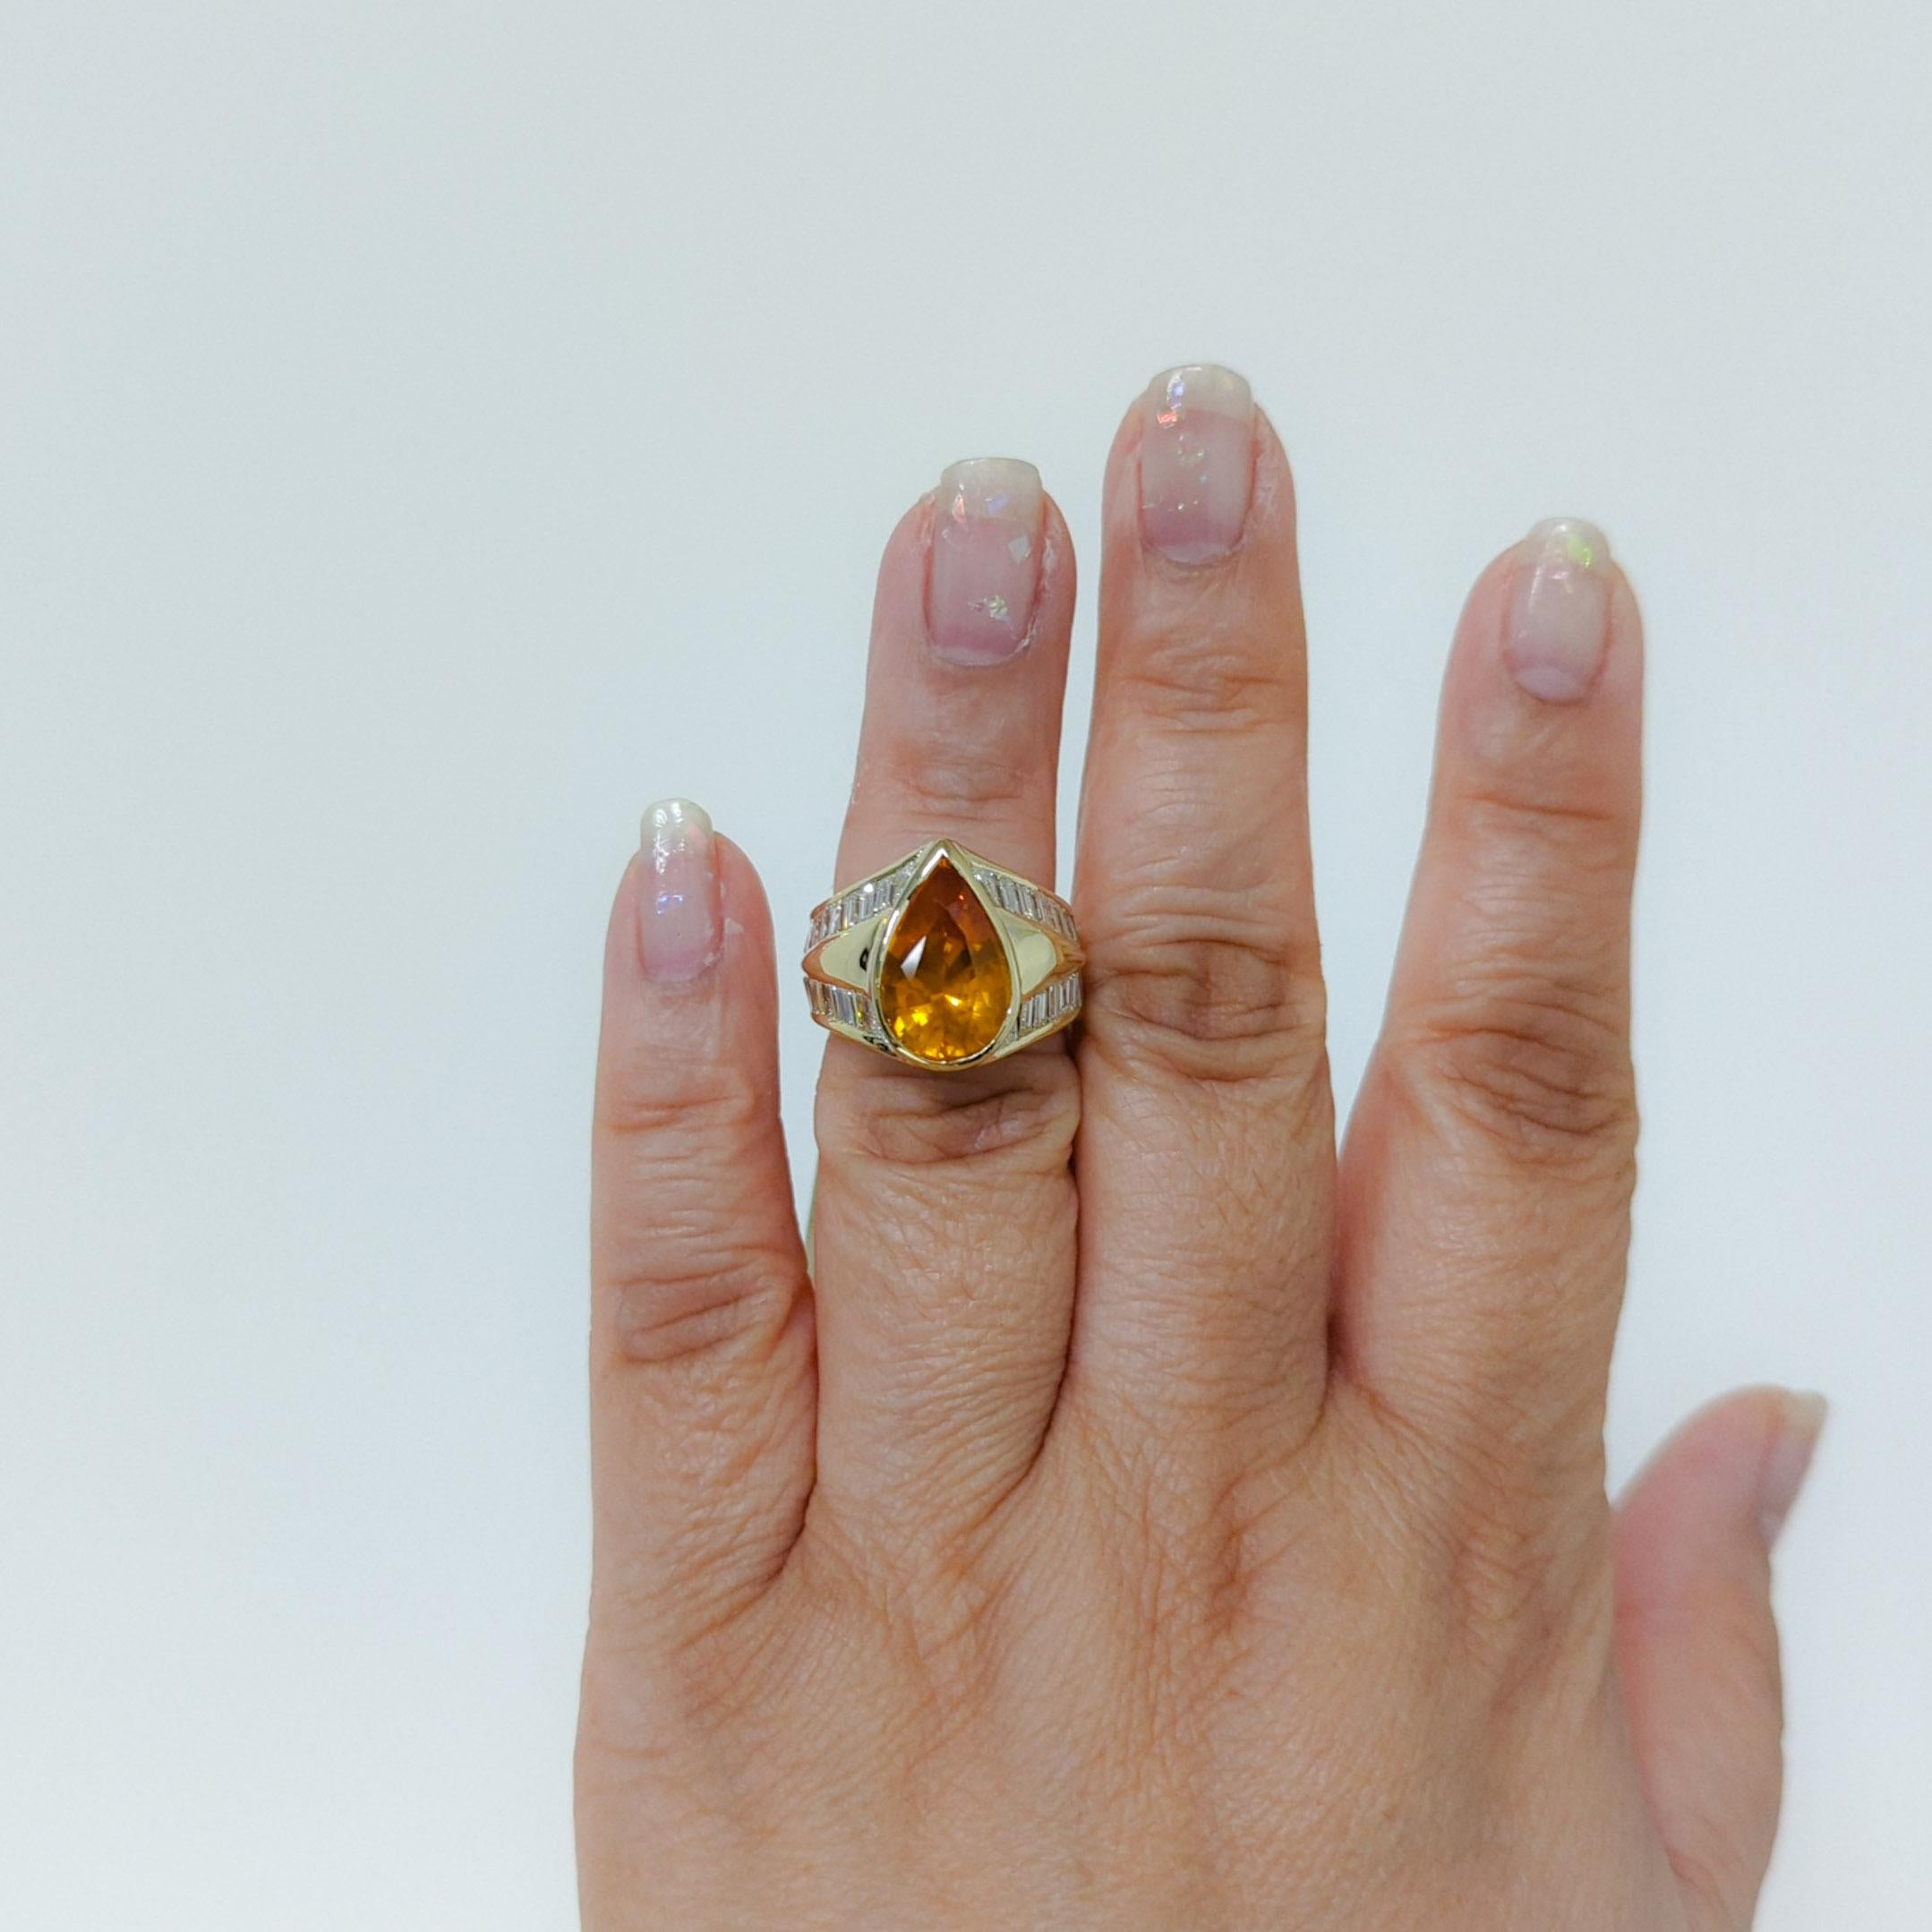 Absolument magnifique 6.65 ct. Saphir jaune orangé certifié GIA en forme de poire avec baguettes de diamants blancs de bonne qualité de 4,00 ct.  Fabriqué à la main en or jaune 18k.  Bague taille 6,25.  Certificat GIA inclus.